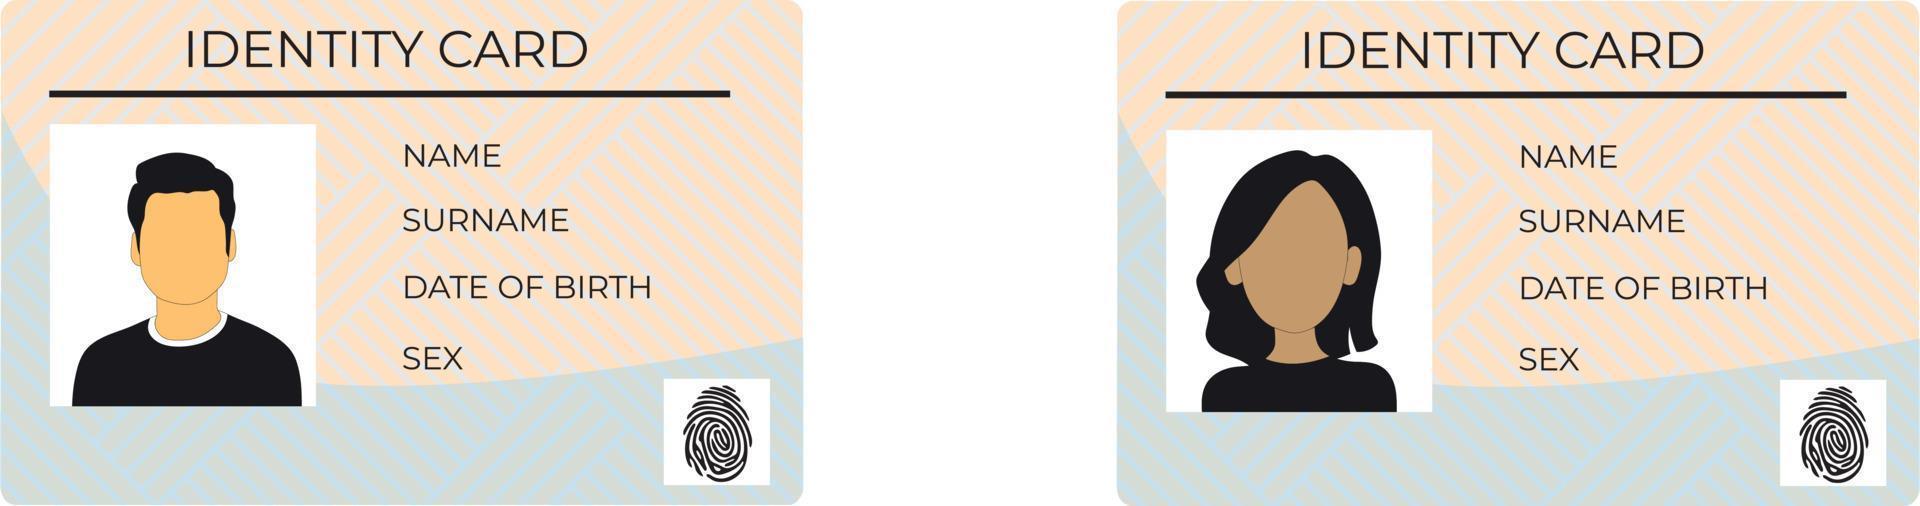 carta d'identità vettoriale con impronta digitale. illustrazione vettoriale dell'icona della carta d'identità isolata su sfondo bianco per la patente di guida. concetto di biglietto da visita, carta dello studente e altro ancora